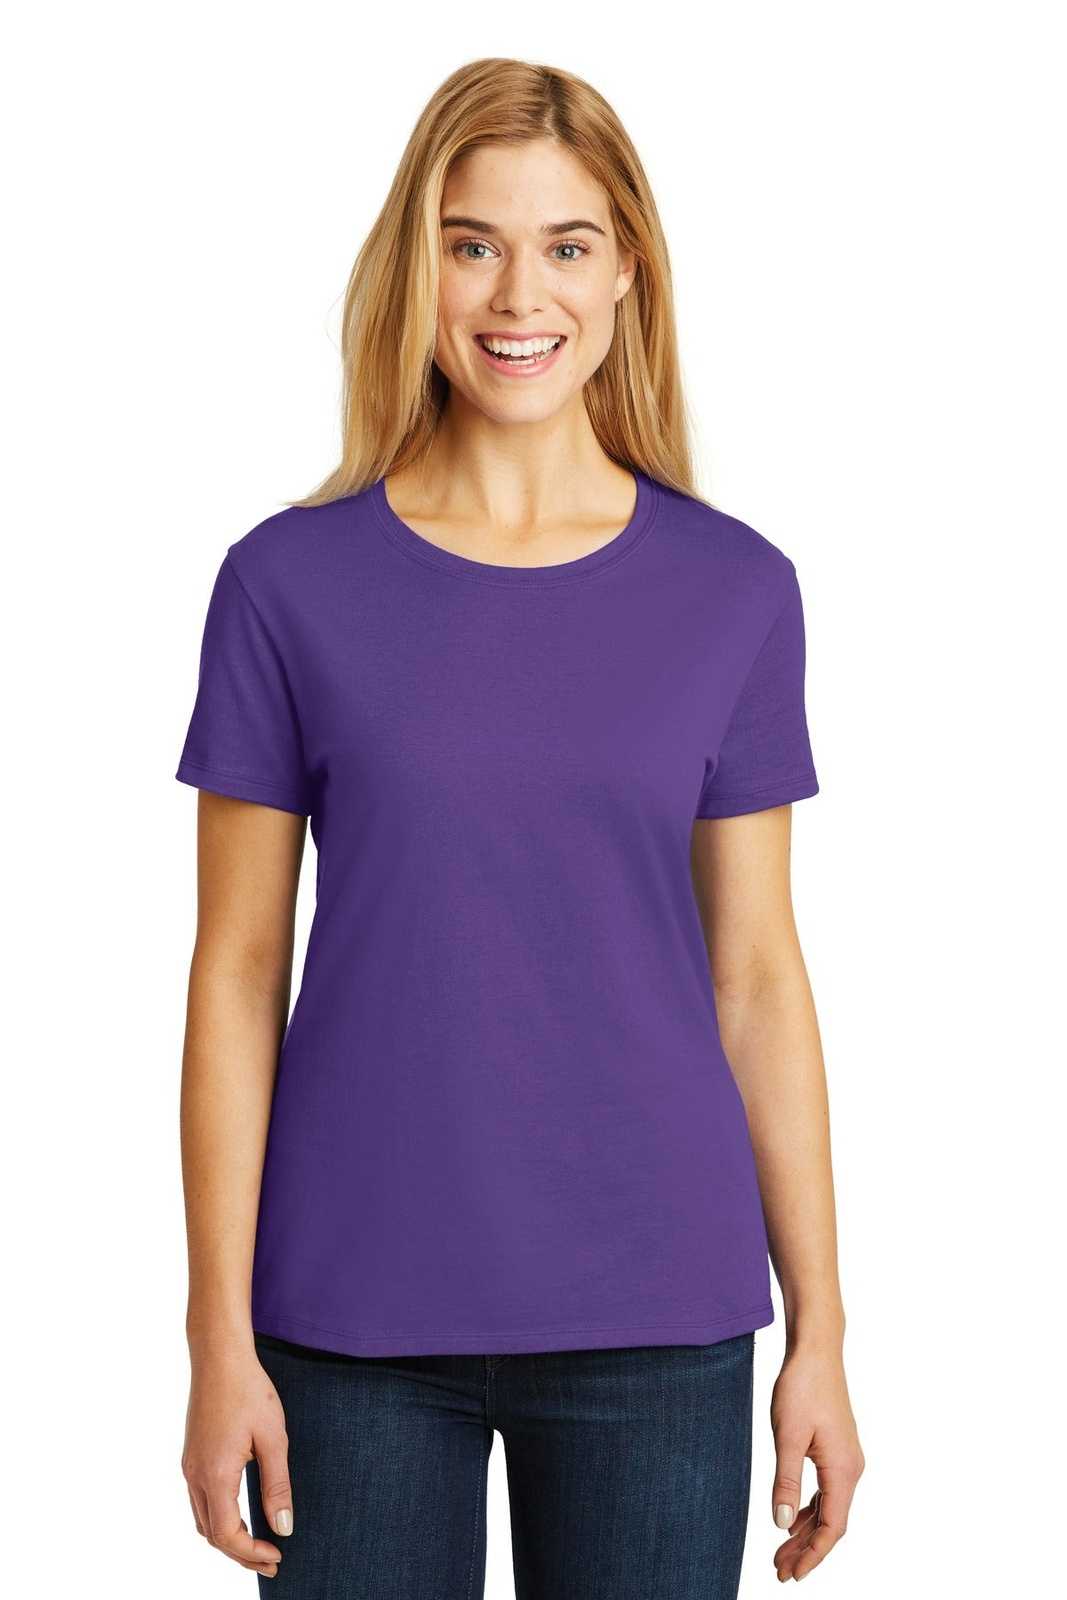 Hanes SL04 Ladies Nano-T Cotton T-Shirt - Purple - HIT a Double